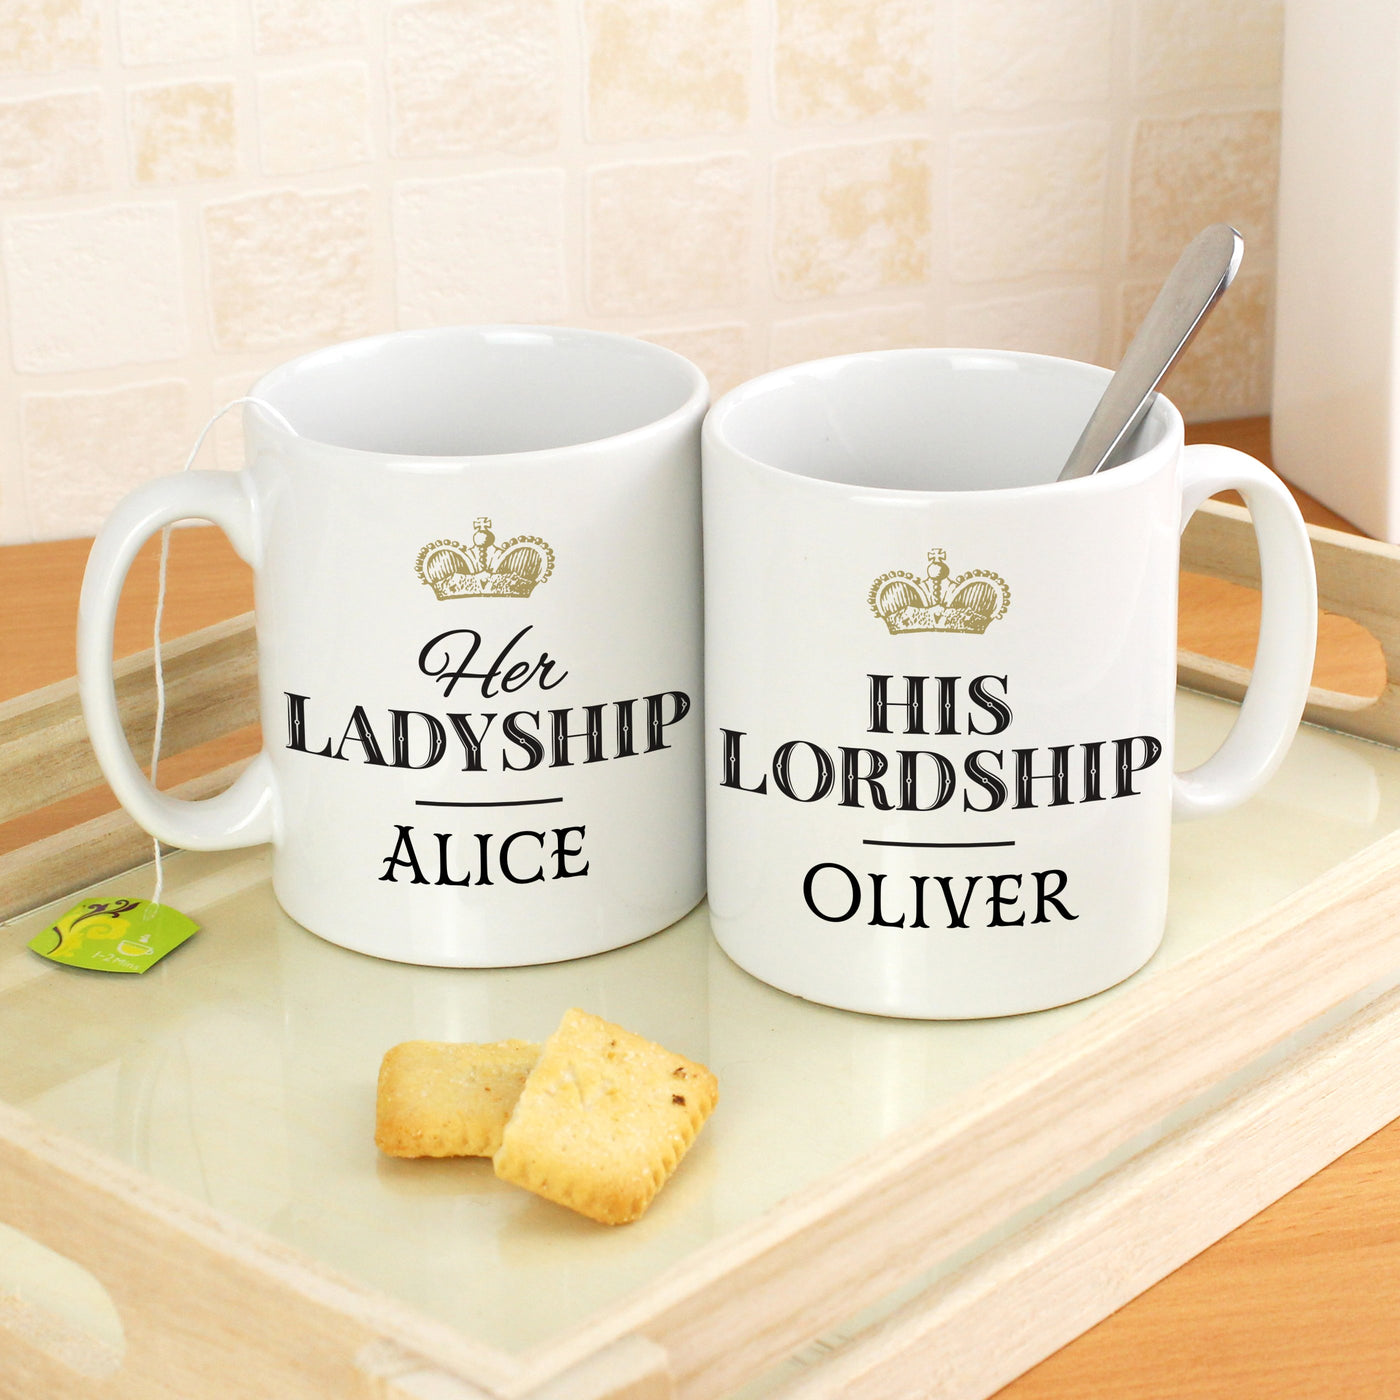 Personalised Ladyship and Lordship Ceramic Mug Set - Shop Personalised Gifts